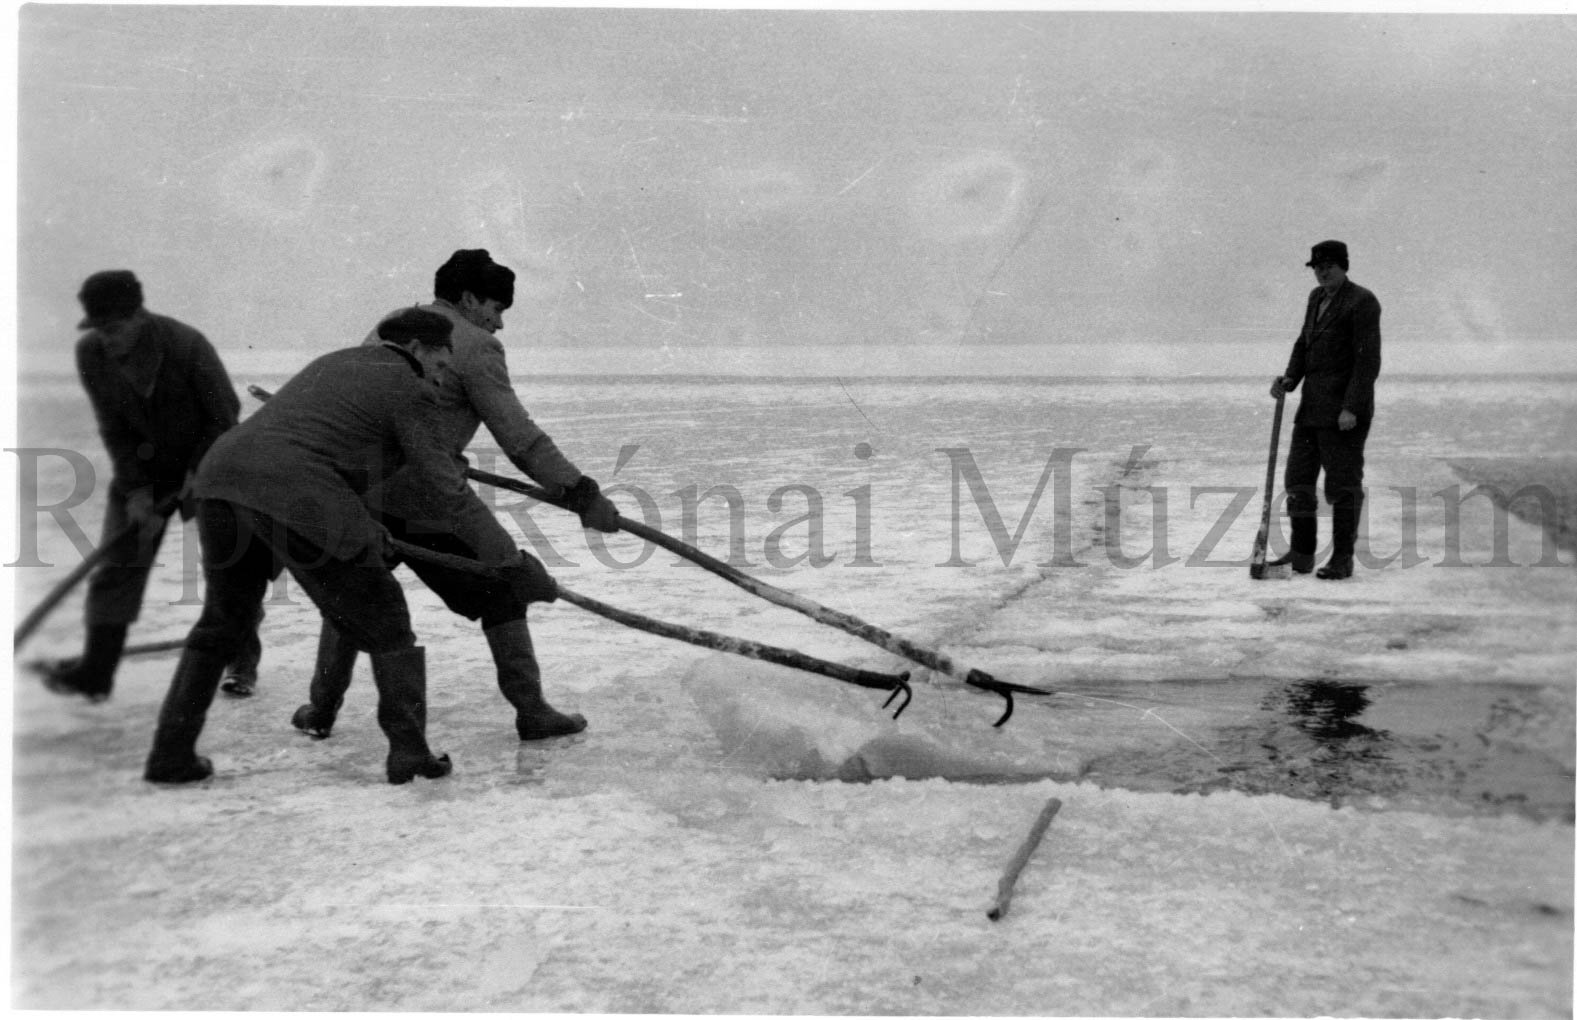 A lellei Balaton Gyöngye Tsz. jégvágó brigádja. Partra húzzák a kivágott jégkockát (Rippl-Rónai Múzeum CC BY-NC-SA)